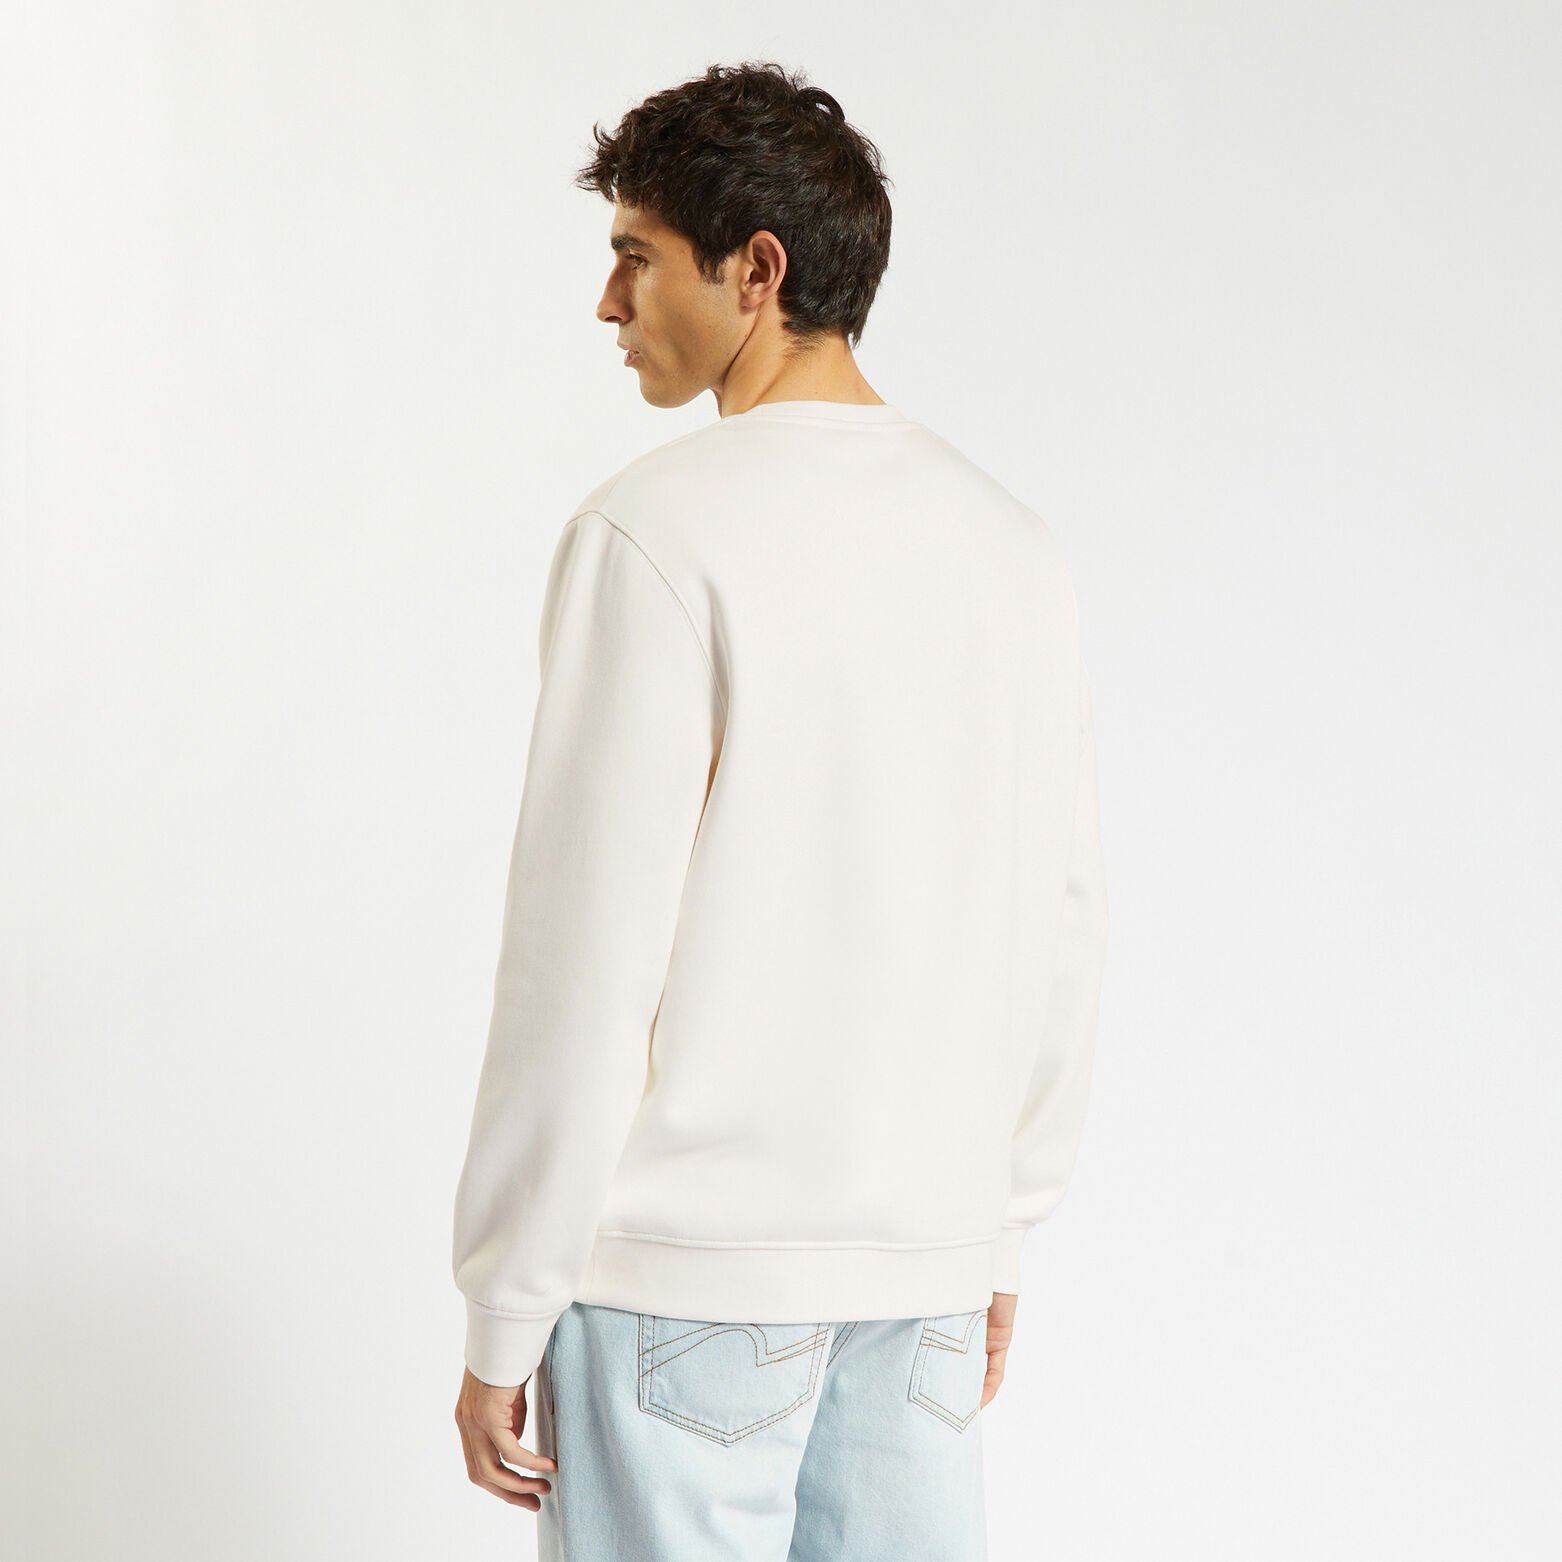 Sweater met ronde hals, licentie Smiley